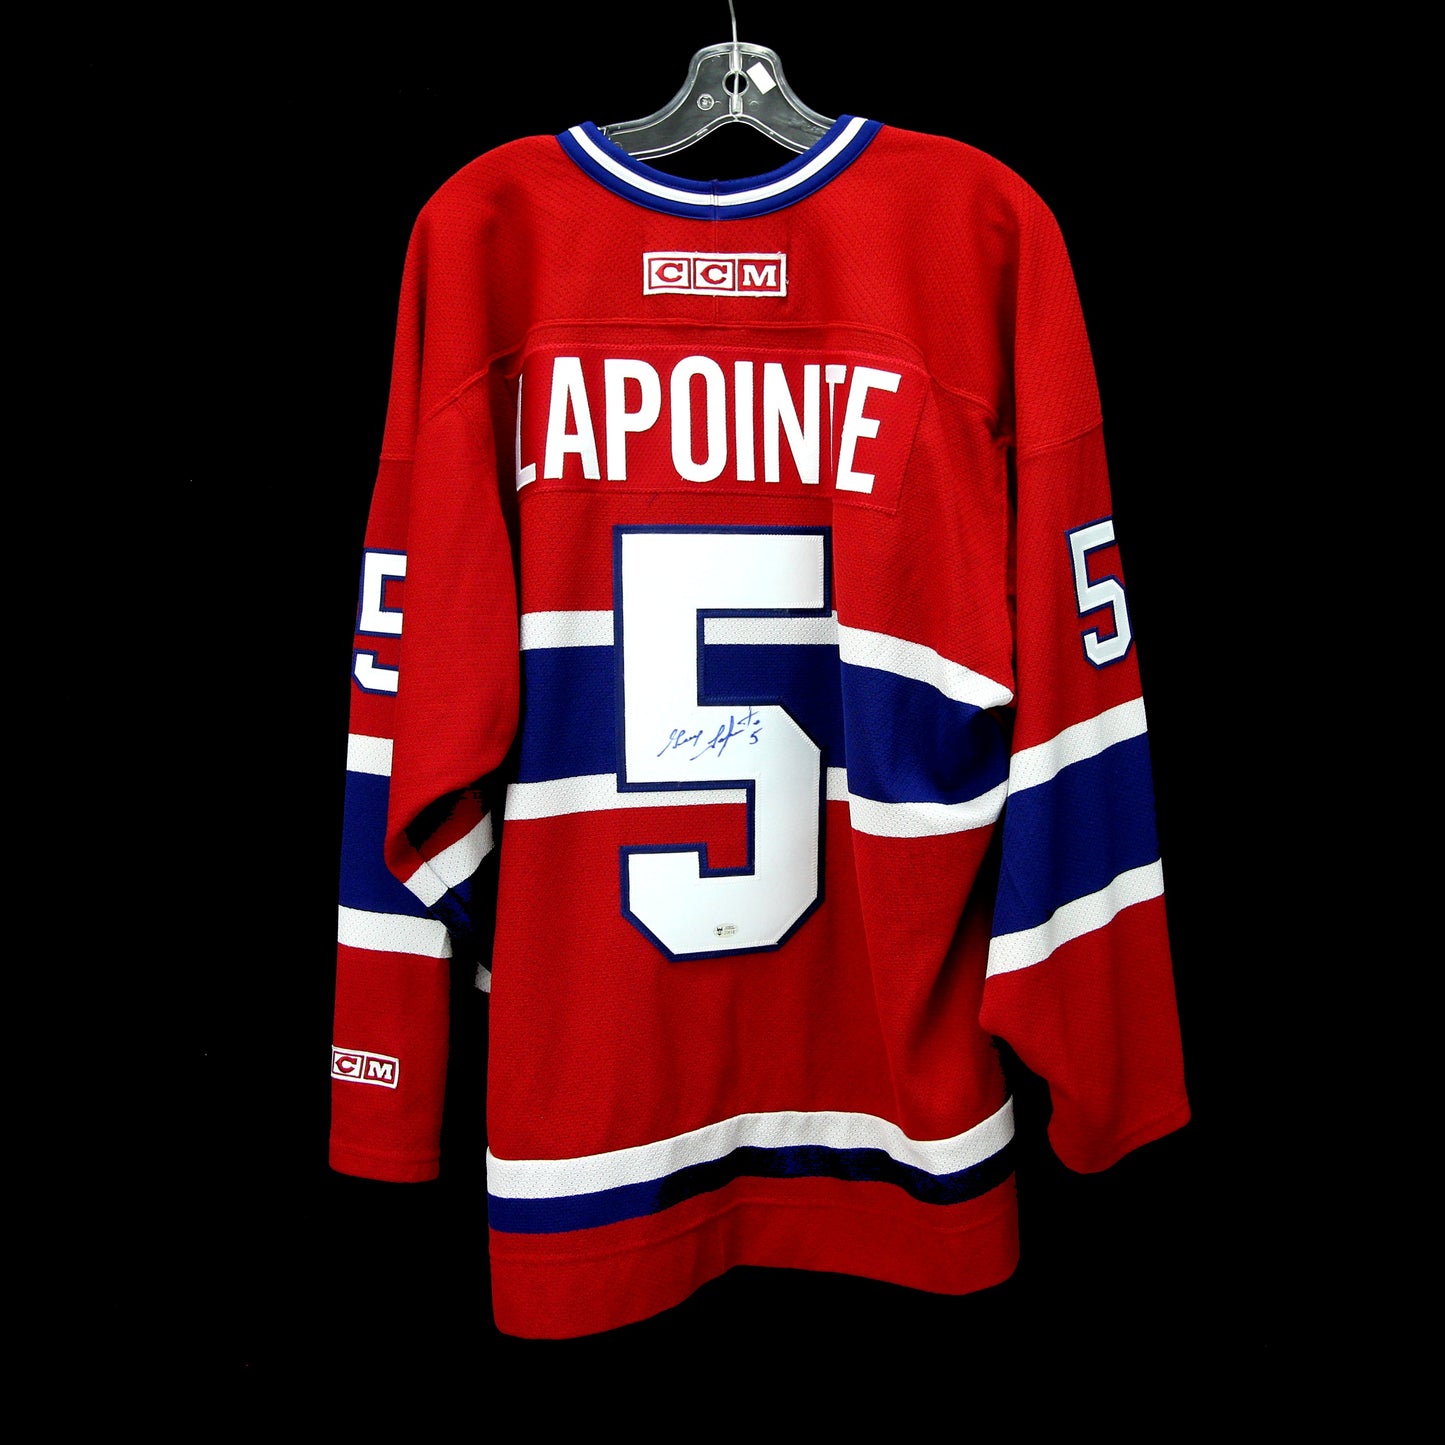 Guy Lapointe - Canadiens - Autographed Jersey / Chandail autographié